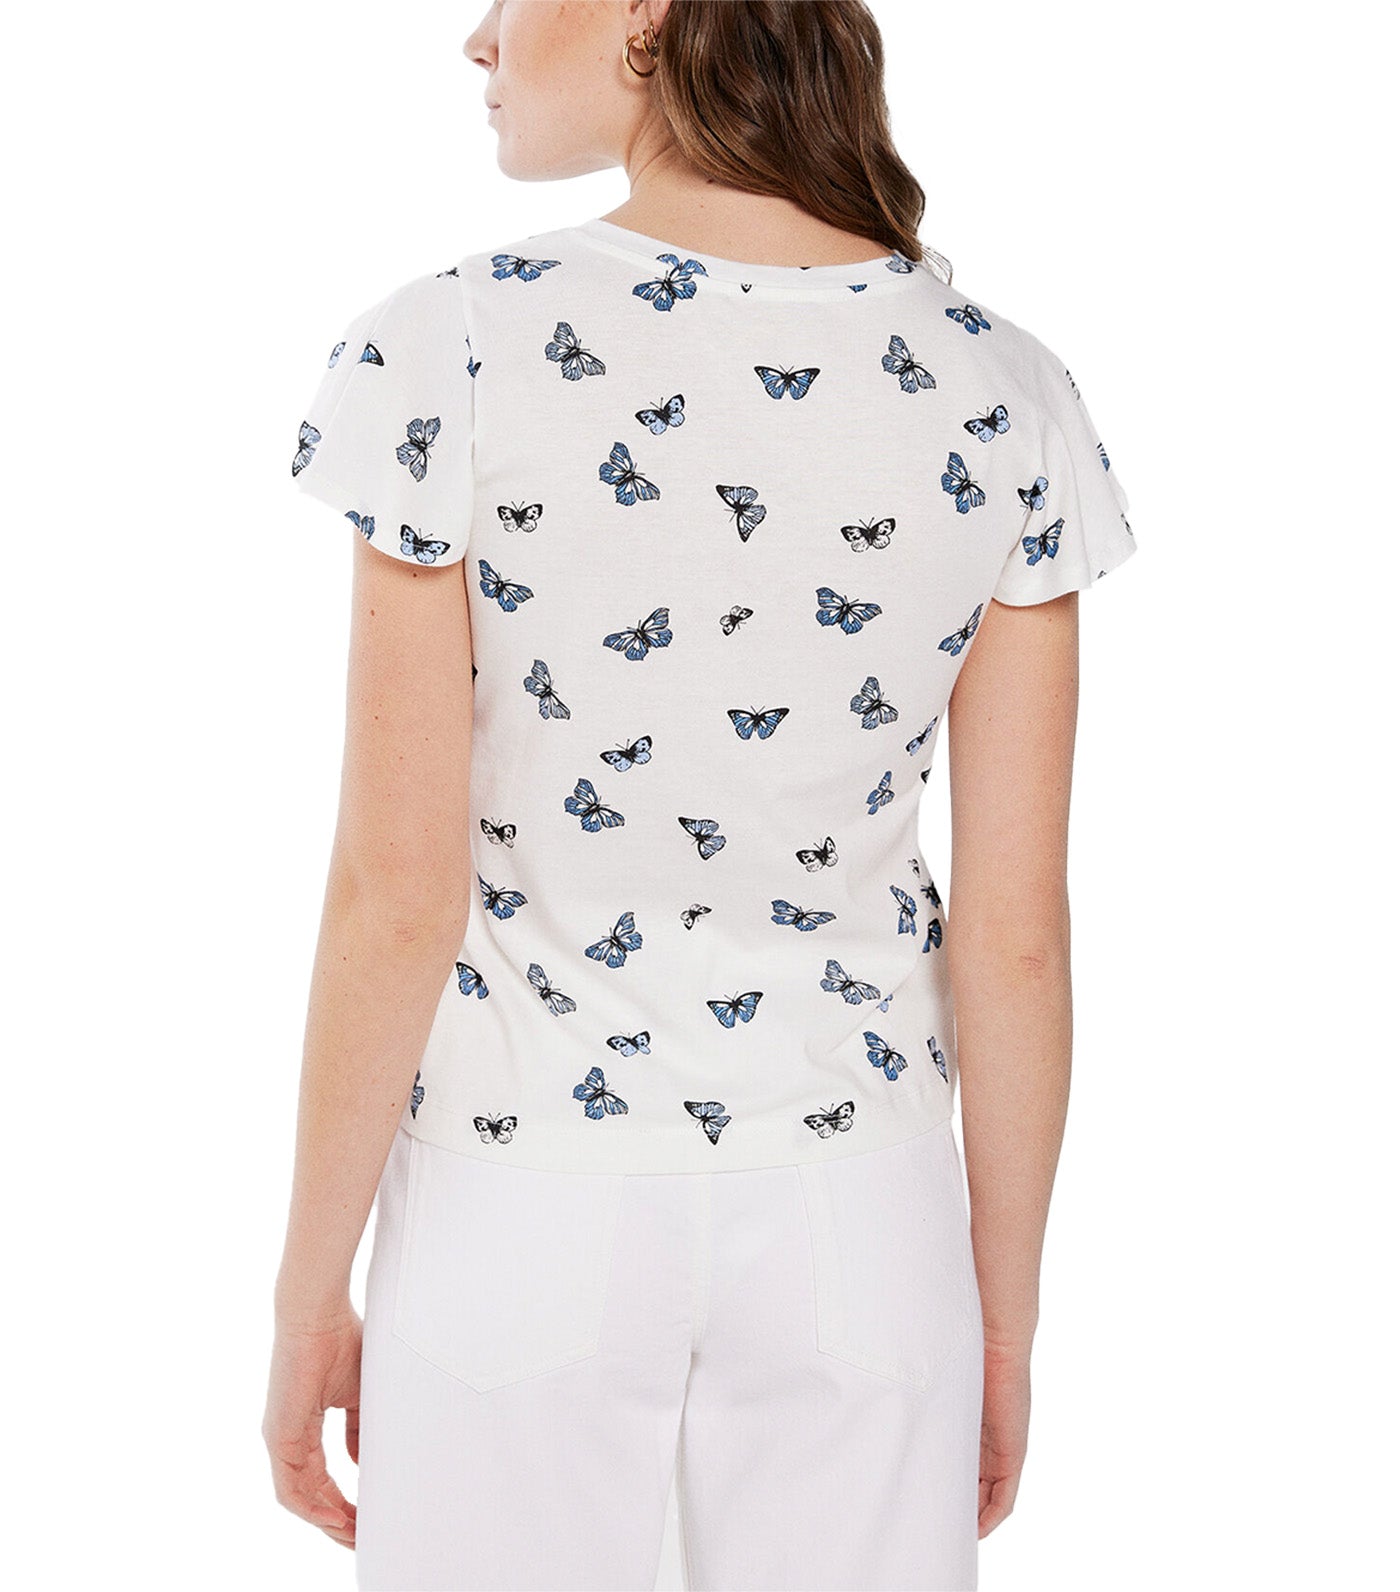 Printed Motifs T-shirt Butterfly